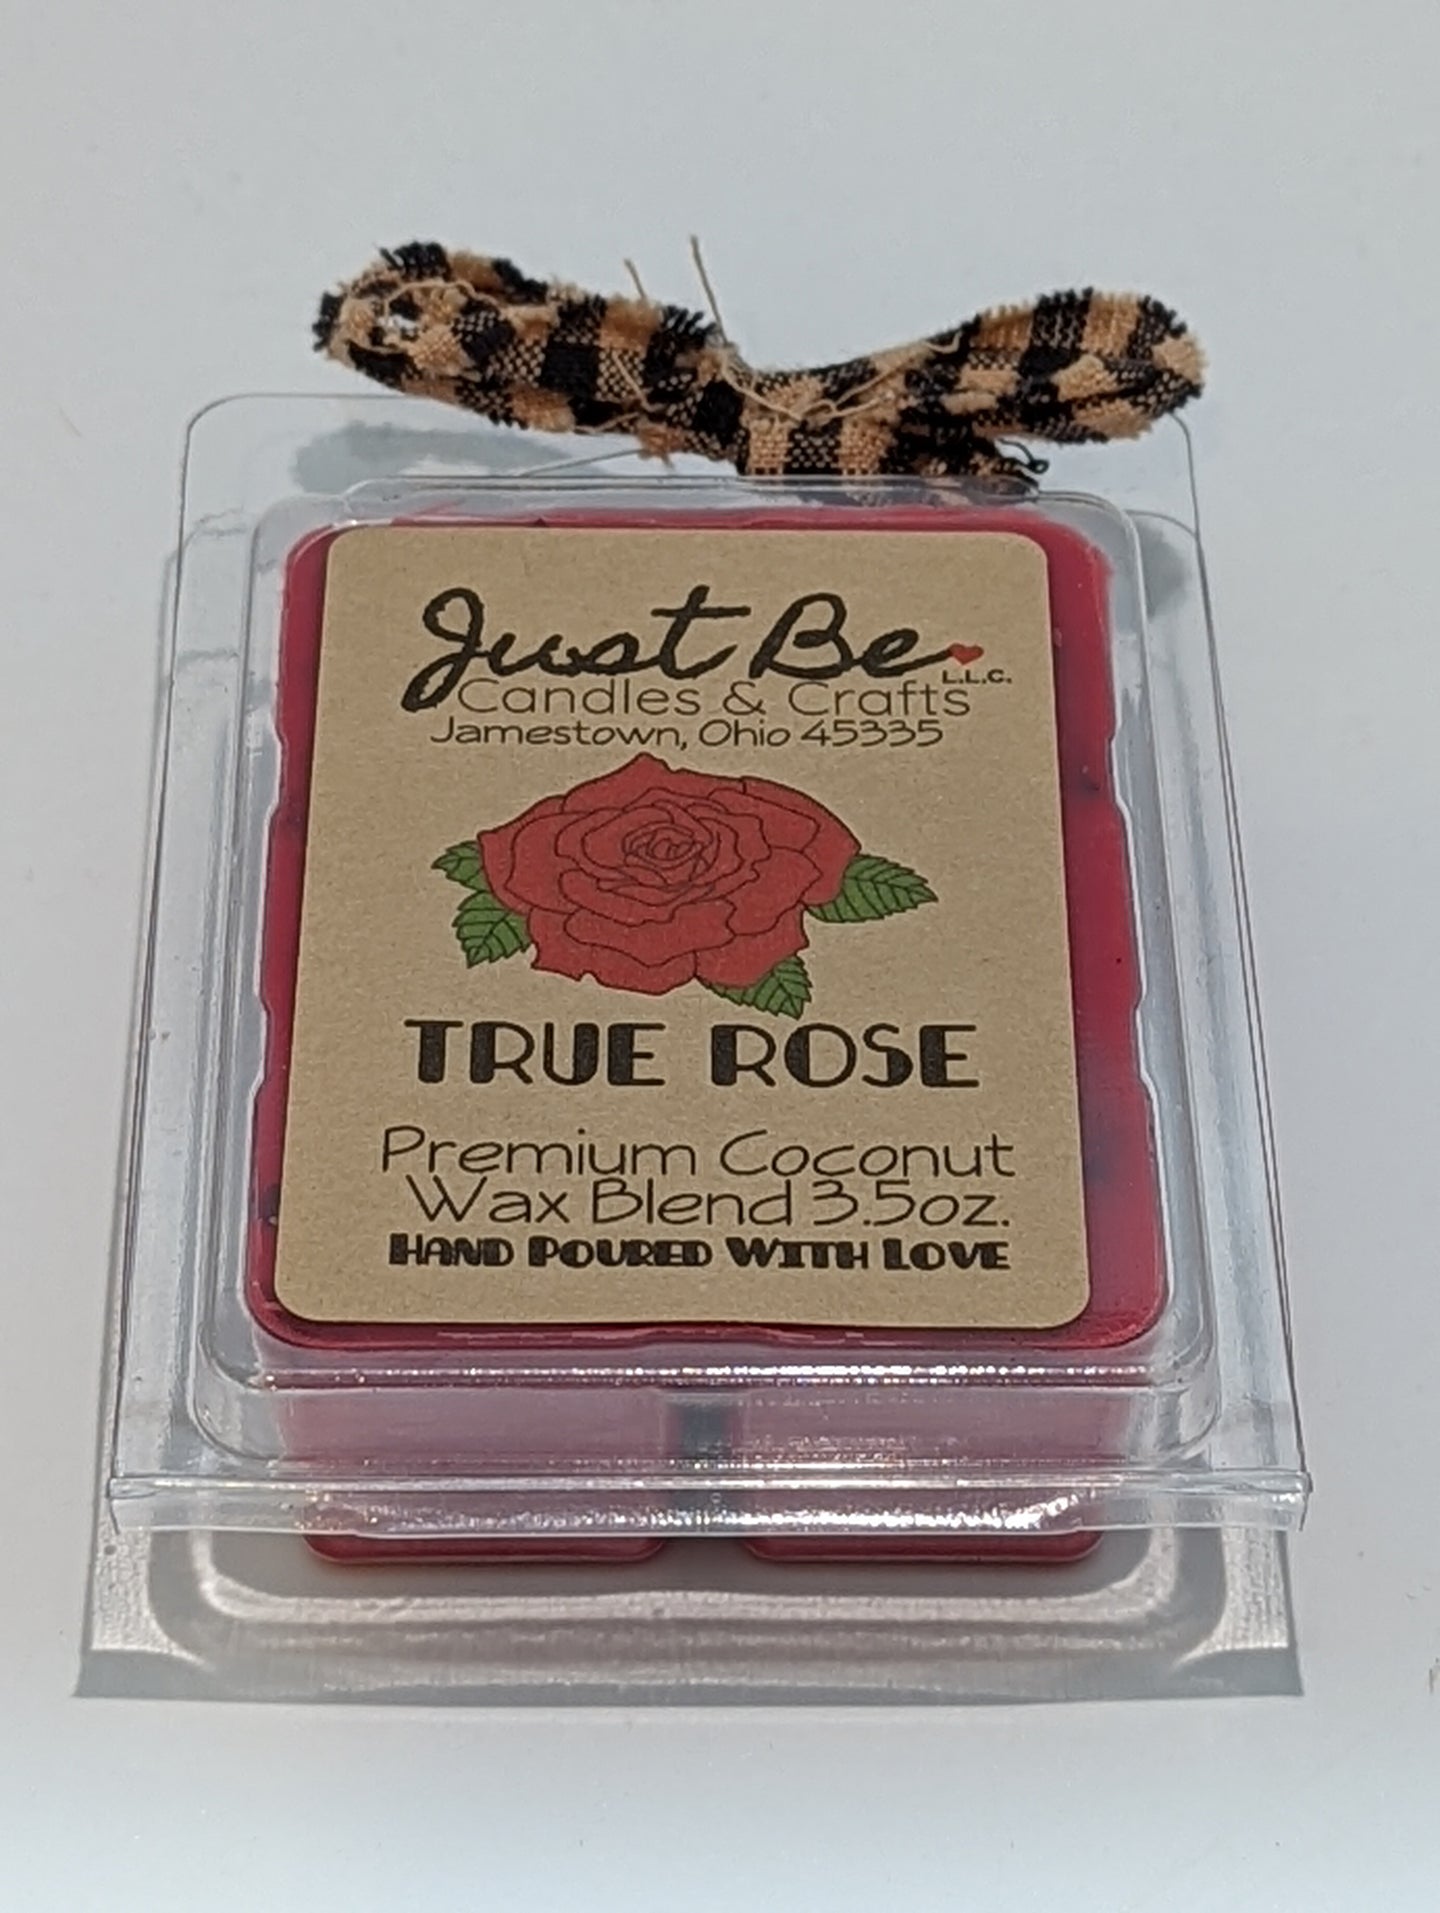 True Rose